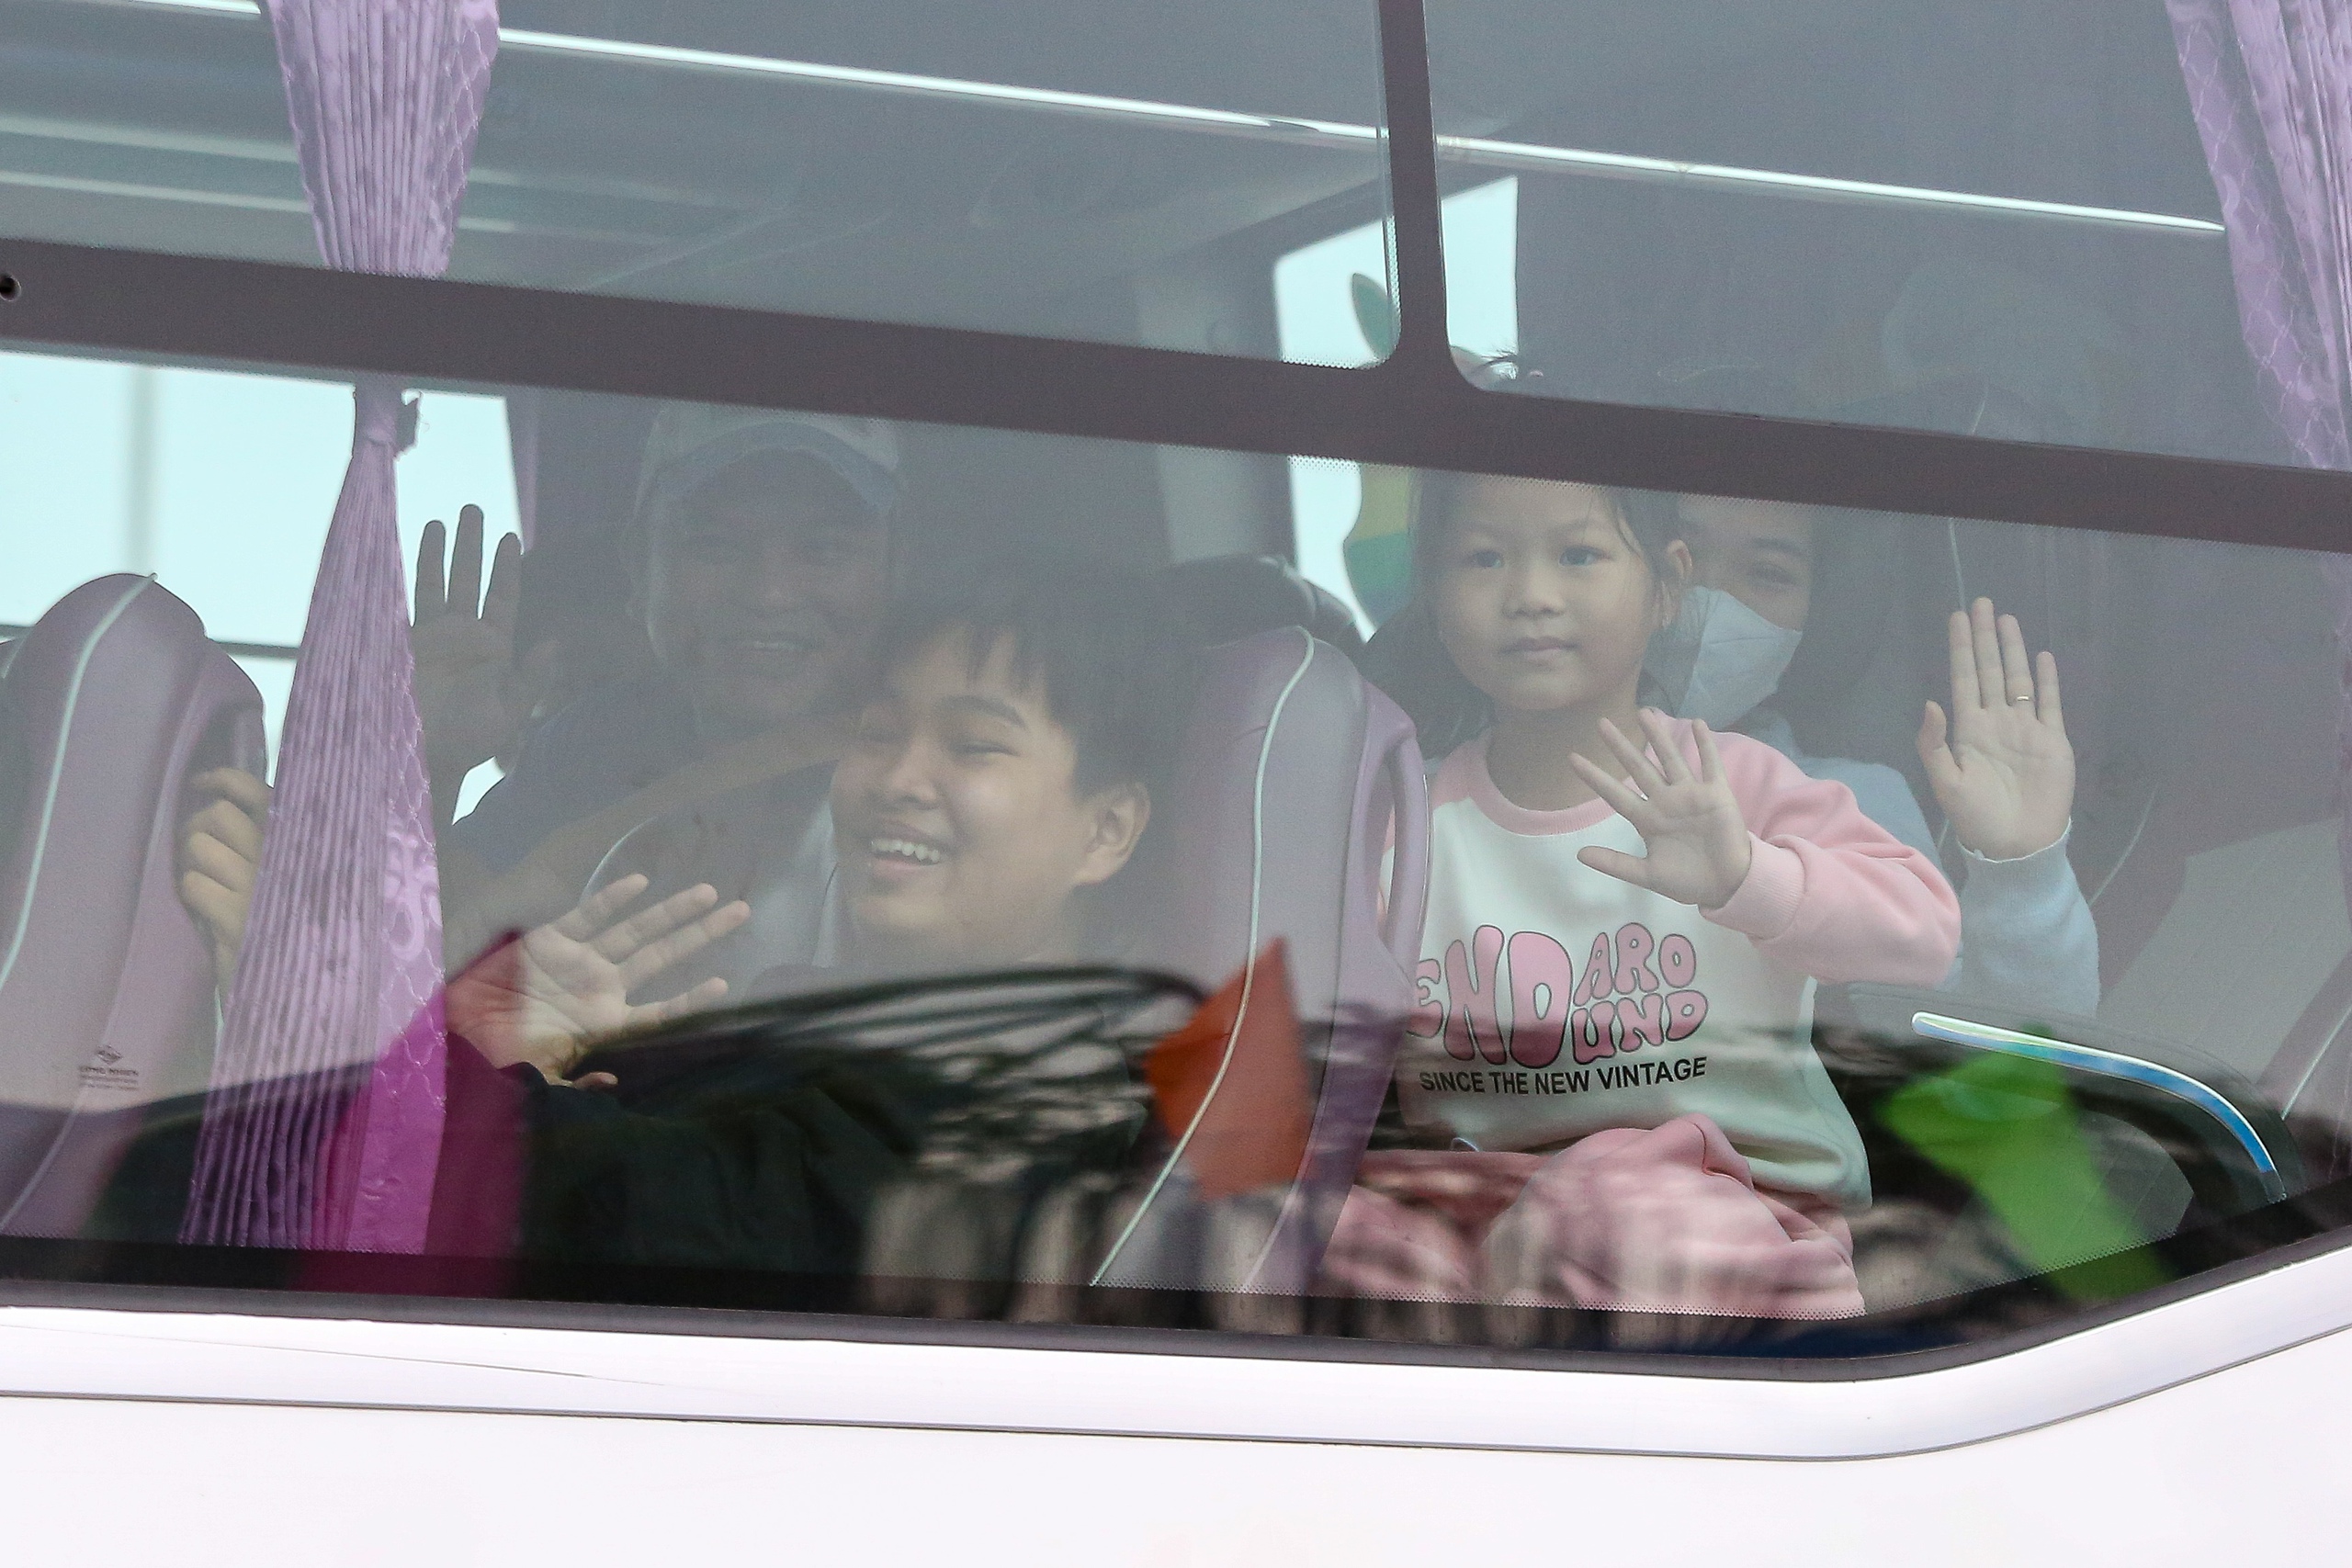 Niềm vui trên những chuyến xe 0 đồng cho hàng ngàn công nhân ở Đà Nẵng: “Tết chỉ trọn vẹn là khi được về nhà” - Ảnh 9.